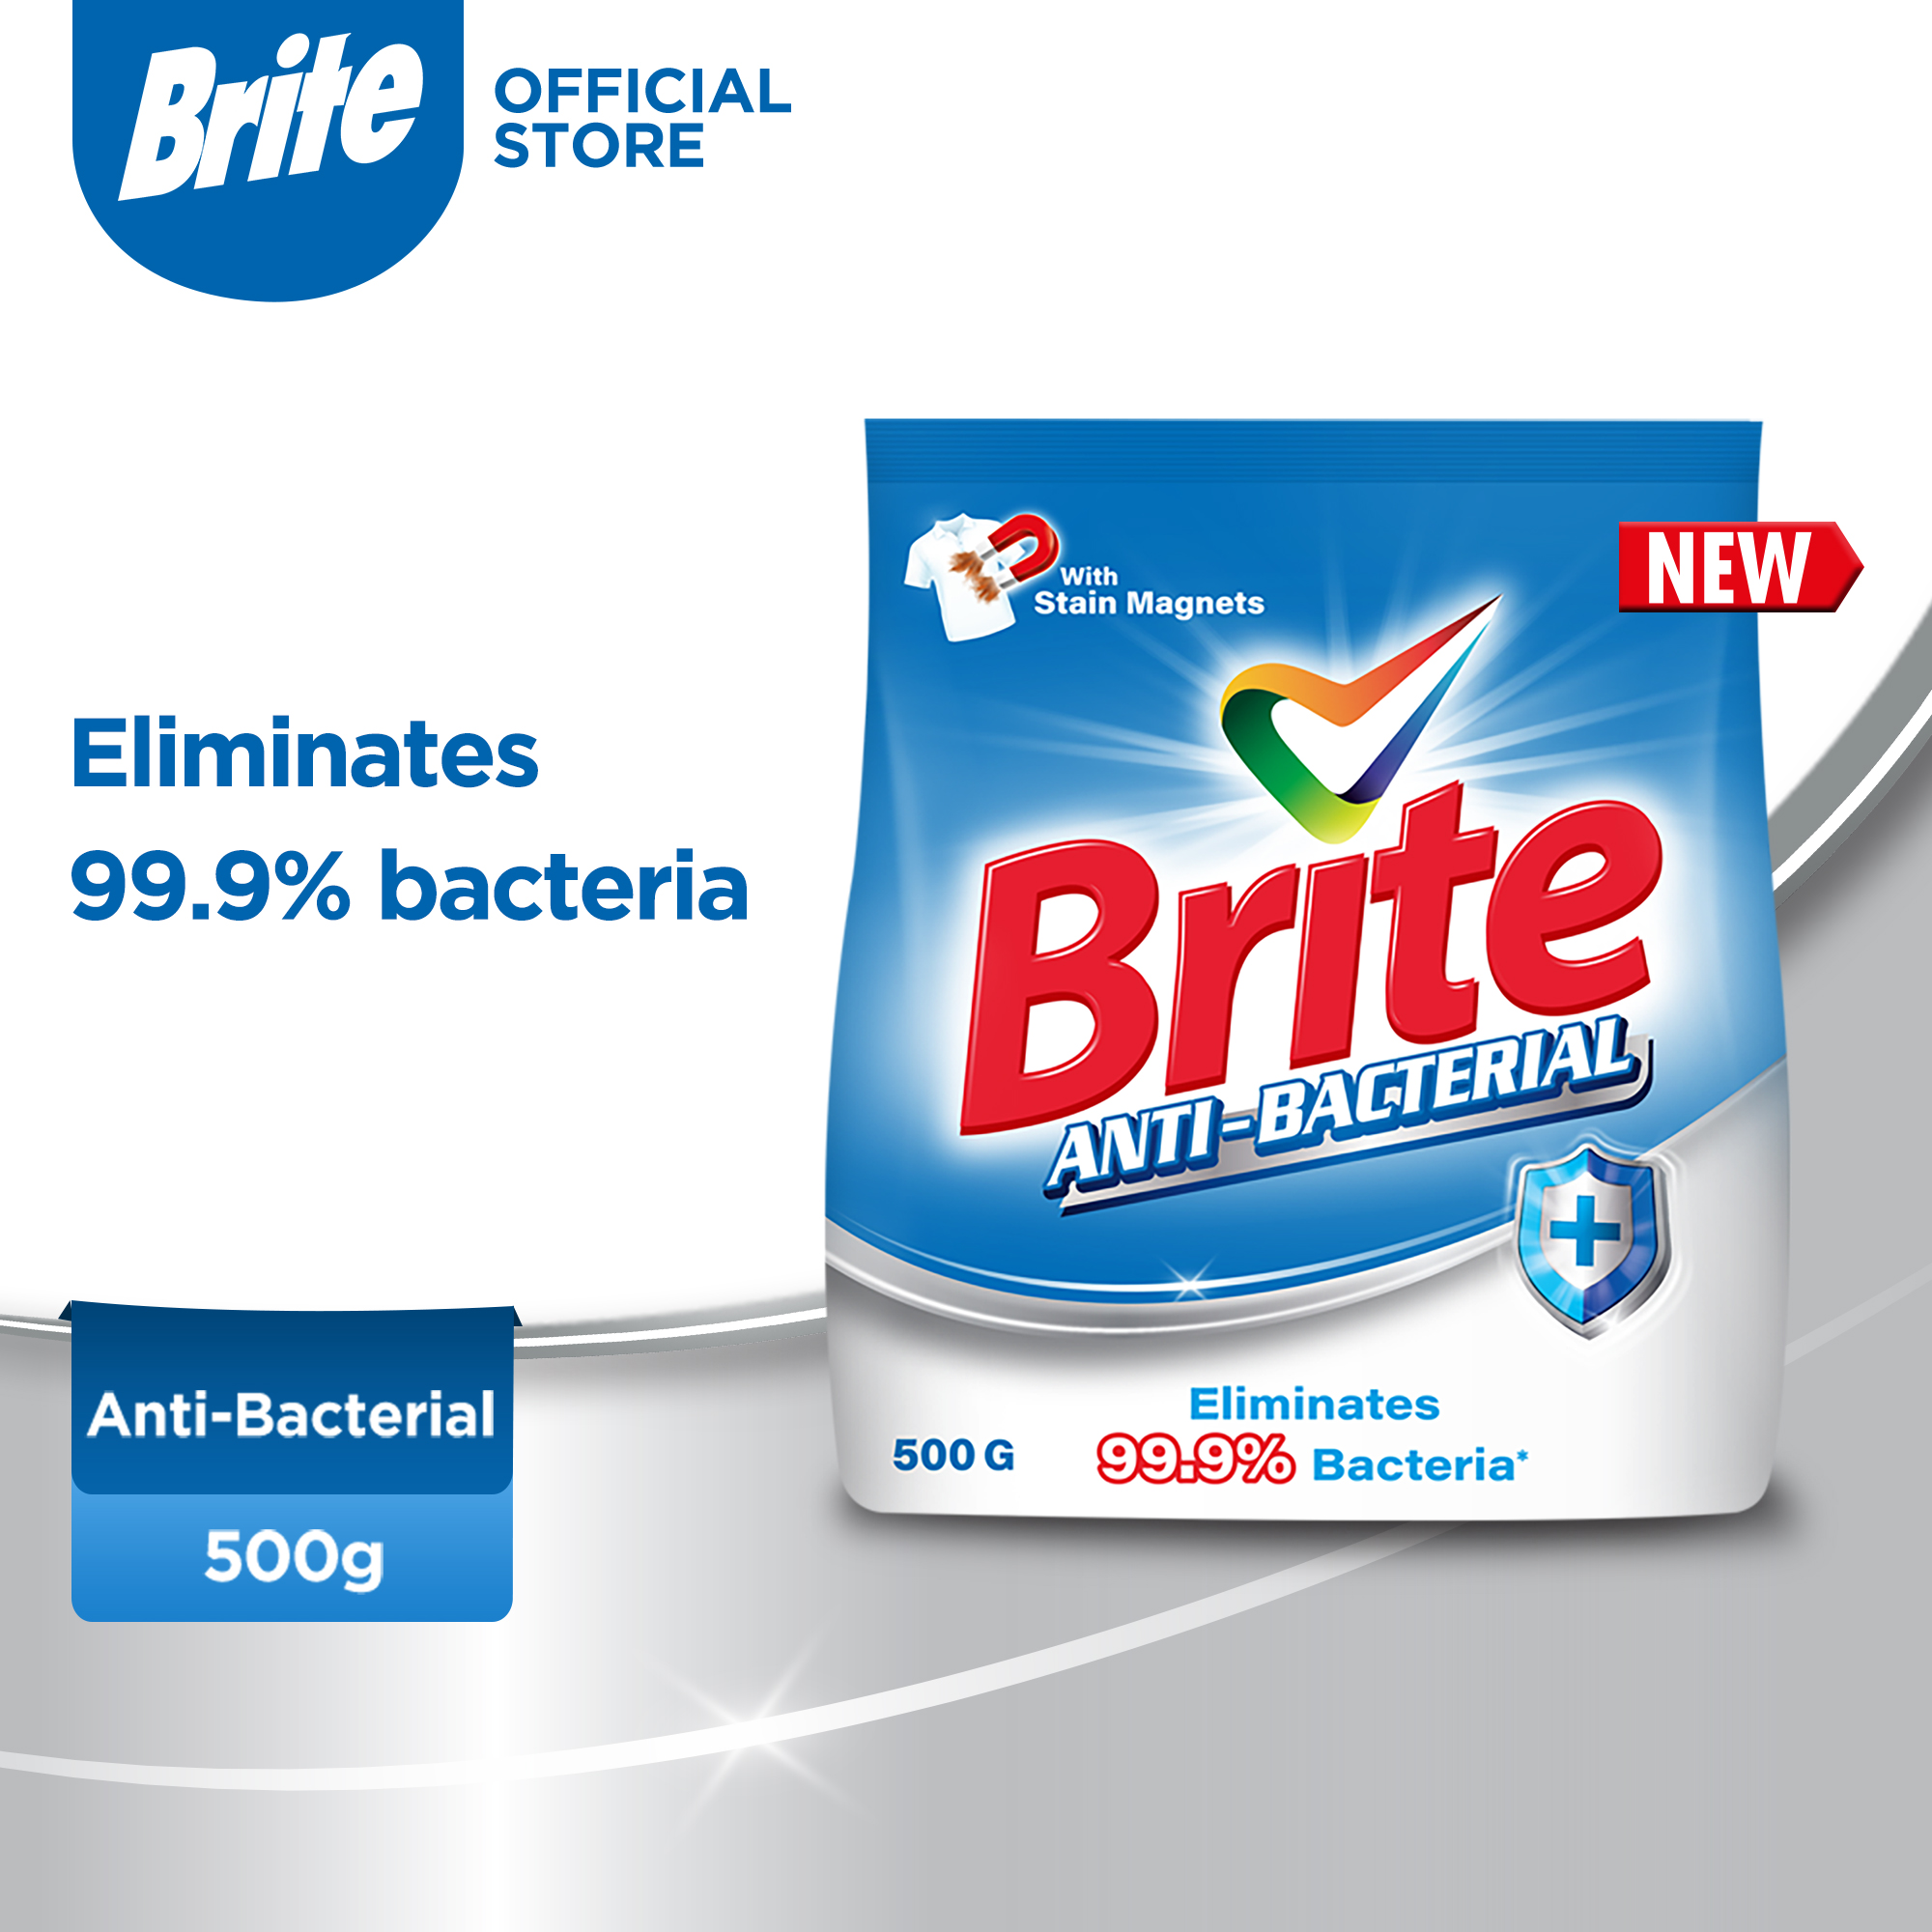 Brite Anti-bacterial 500g - Detergent Washing Powder